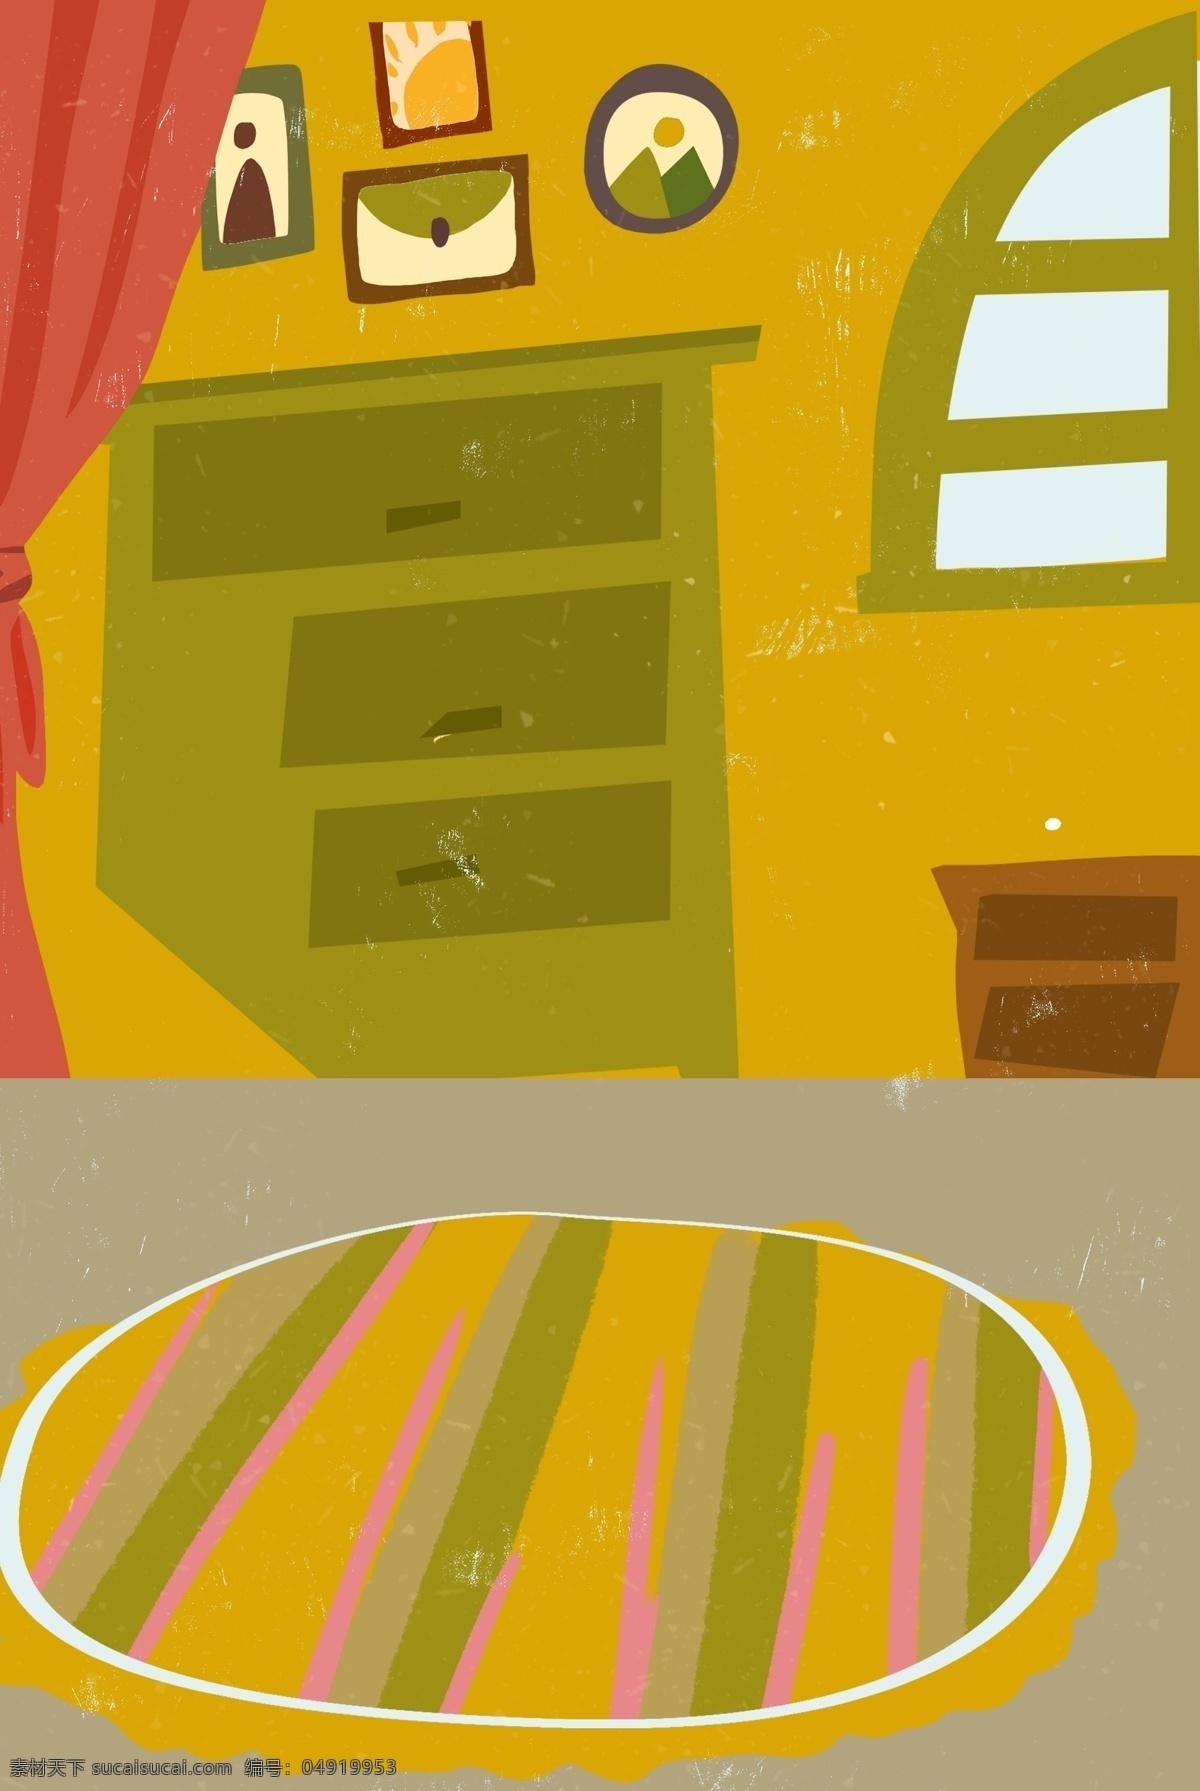 暖色 厨房 室内 背景 暖色背景 黄色墙纸 插画背景 室内背景 扁平背景 卡通背景 家庭